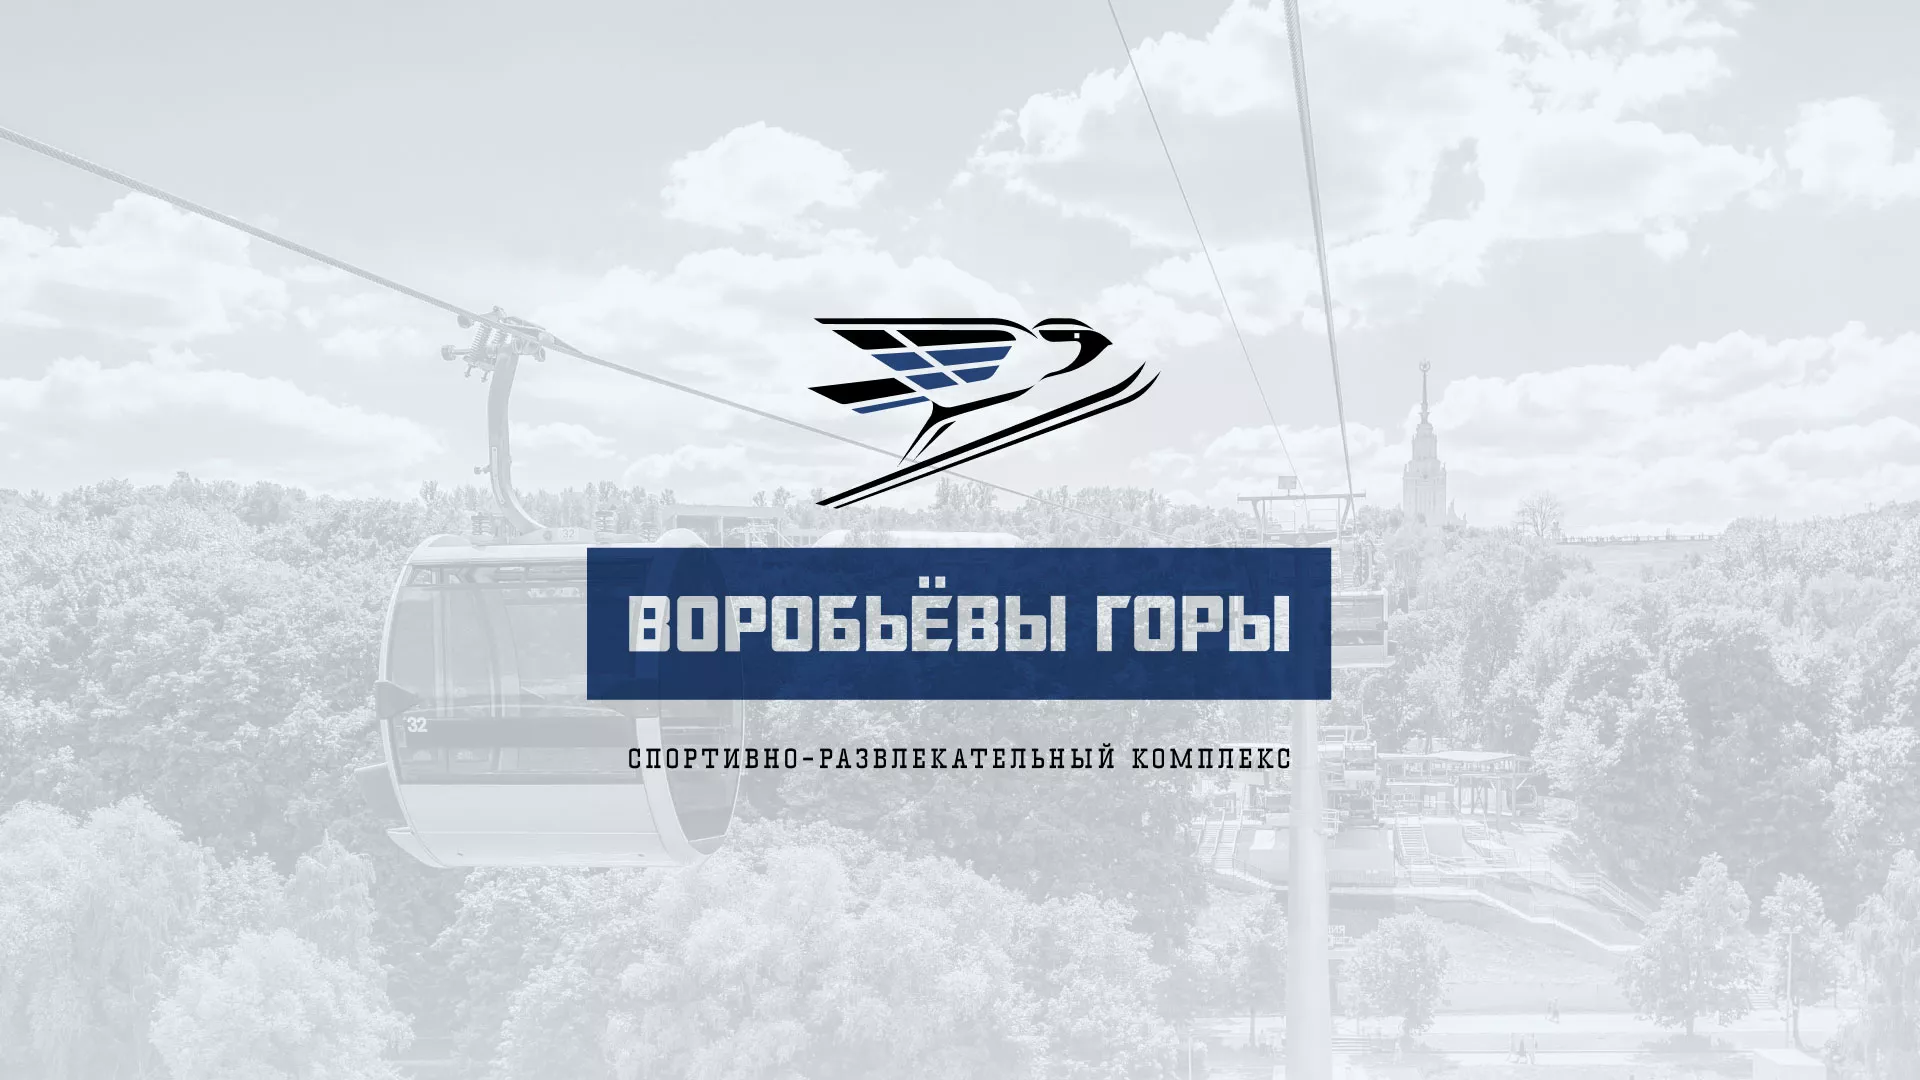 Разработка сайта в Чкаловске для спортивно-развлекательного комплекса «Воробьёвы горы»